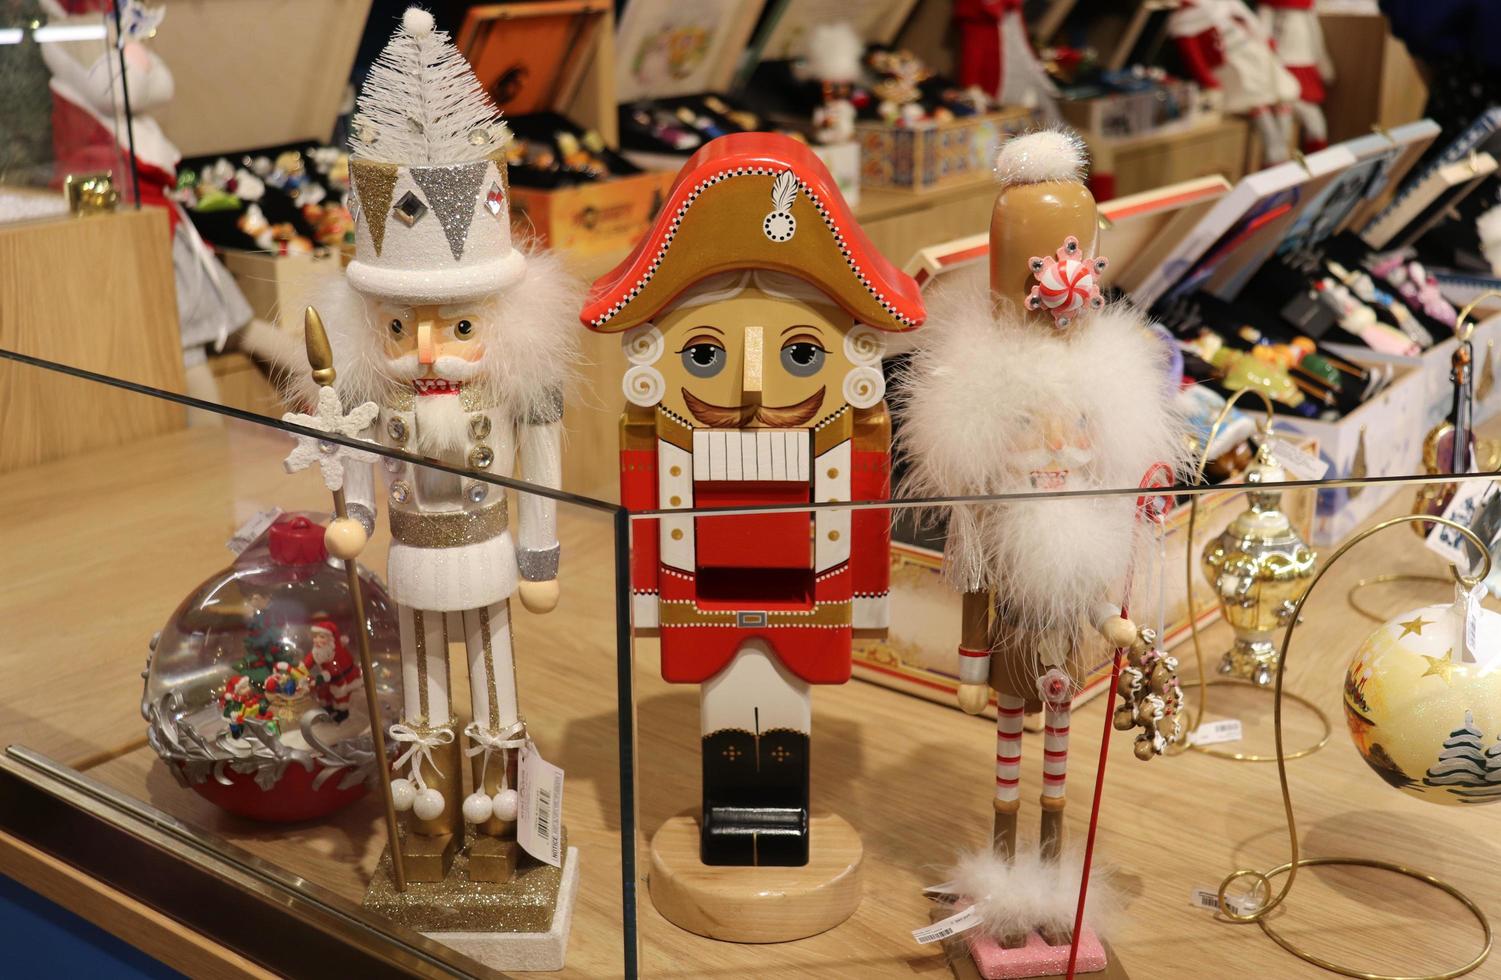 moscou, russie, 2022 - jouets souvenirs héros du conte de fées casse-noisette dans le grand magasin principal photo